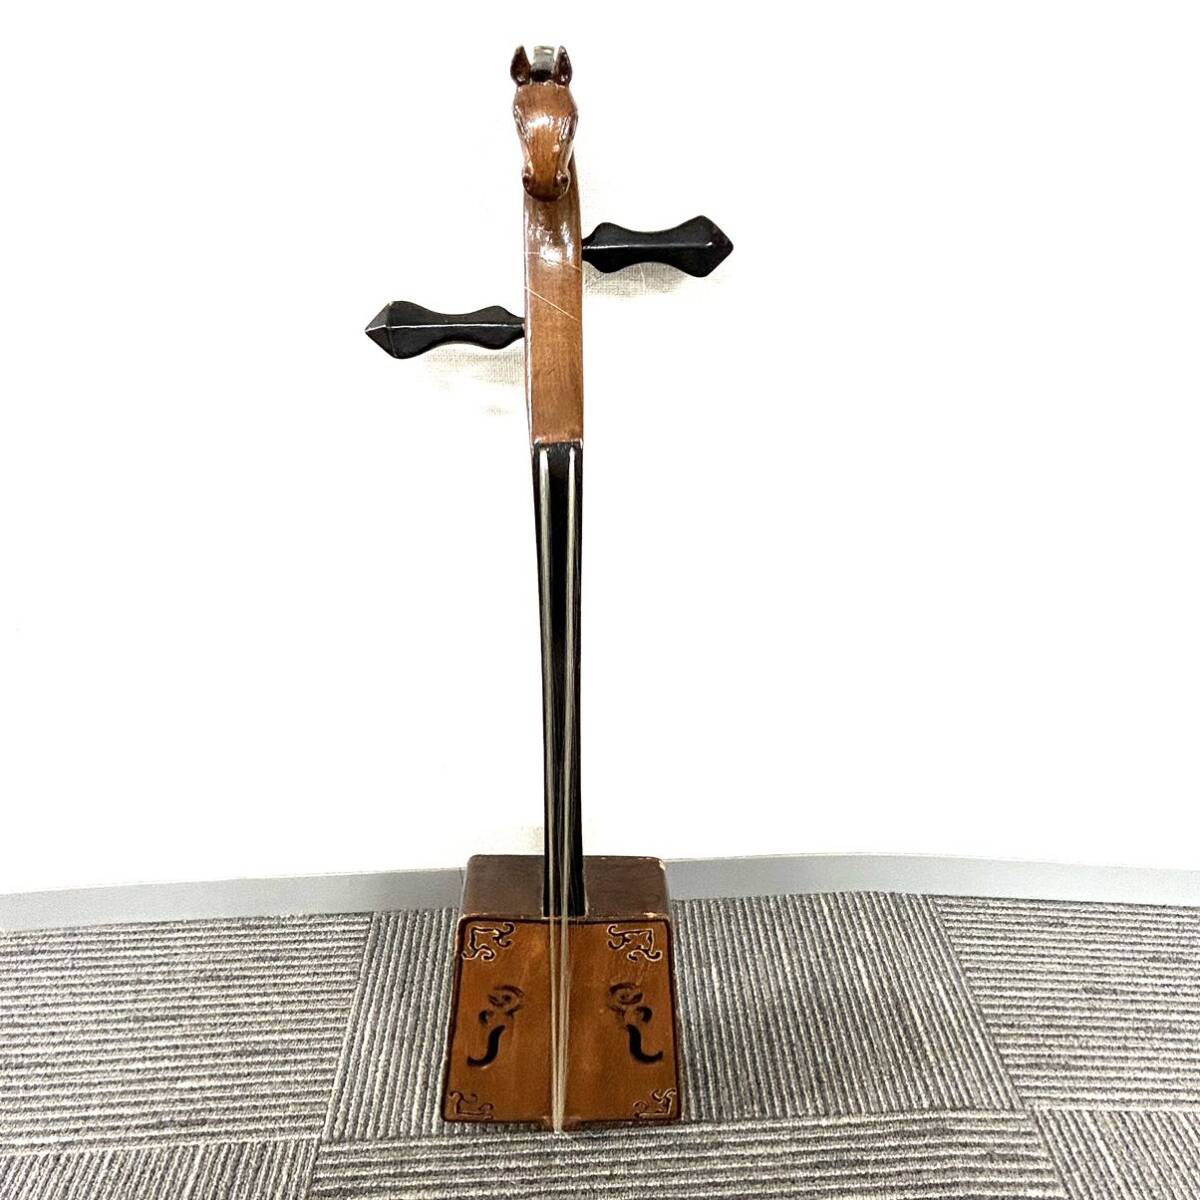 Y577 музыкальные инструменты этнический музыкальный инструмент лошадь голова кото утиль б/у с некоторыми замечаниями 